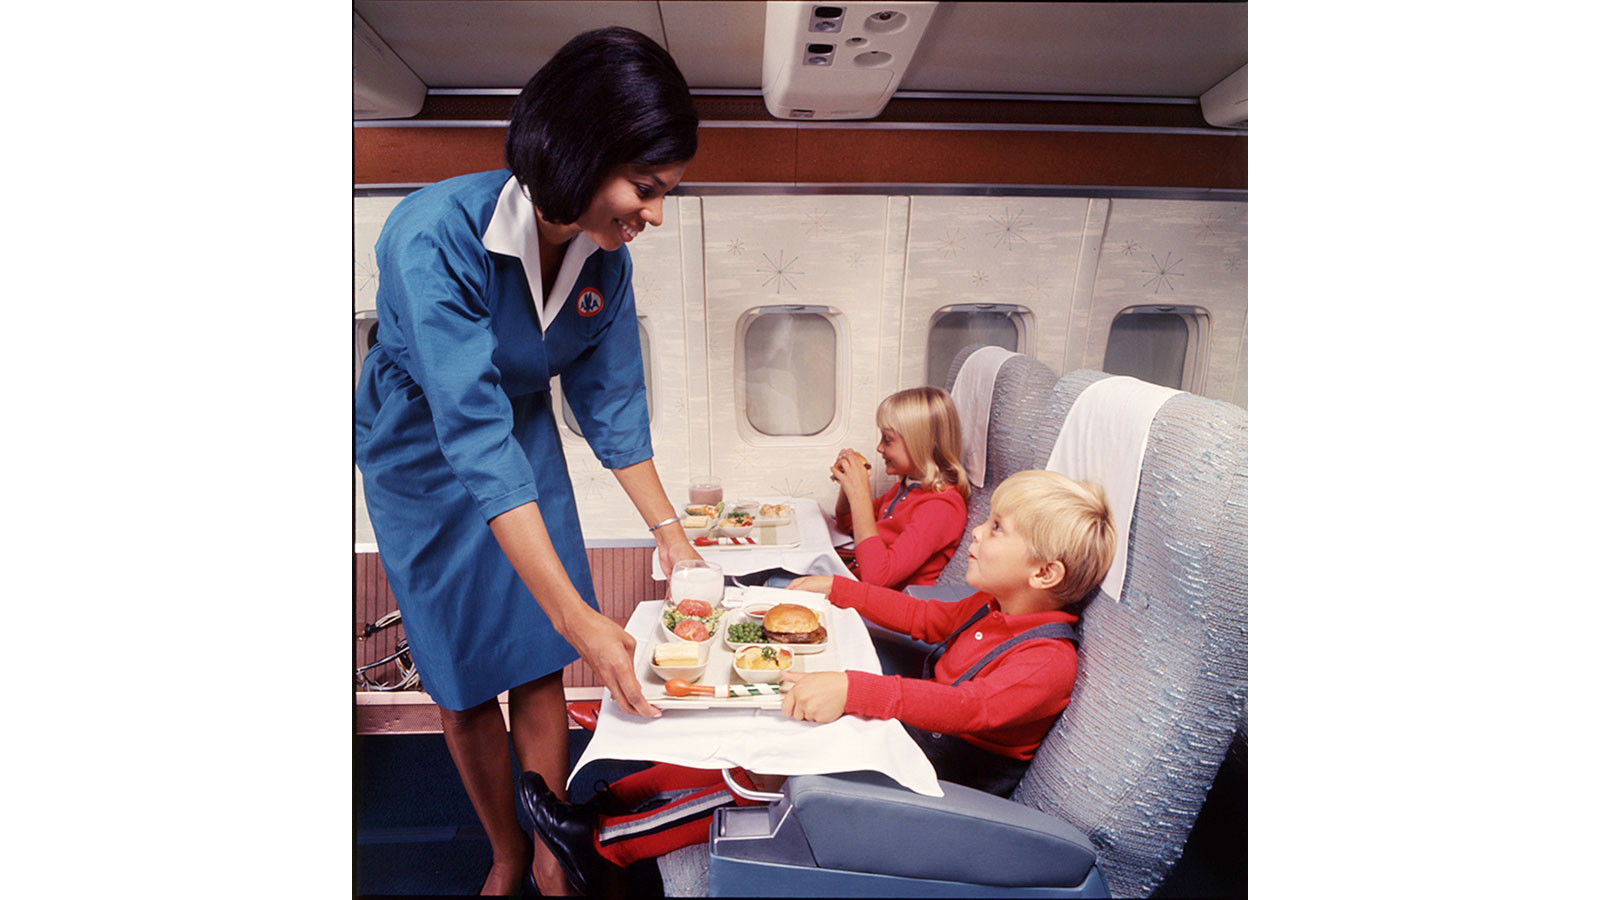 Thực đơn trên chuyến bay của American Airlines bao gồm các lựa chọn bánh mì kẹp thịt cho trẻ em. Ảnh: CNN.